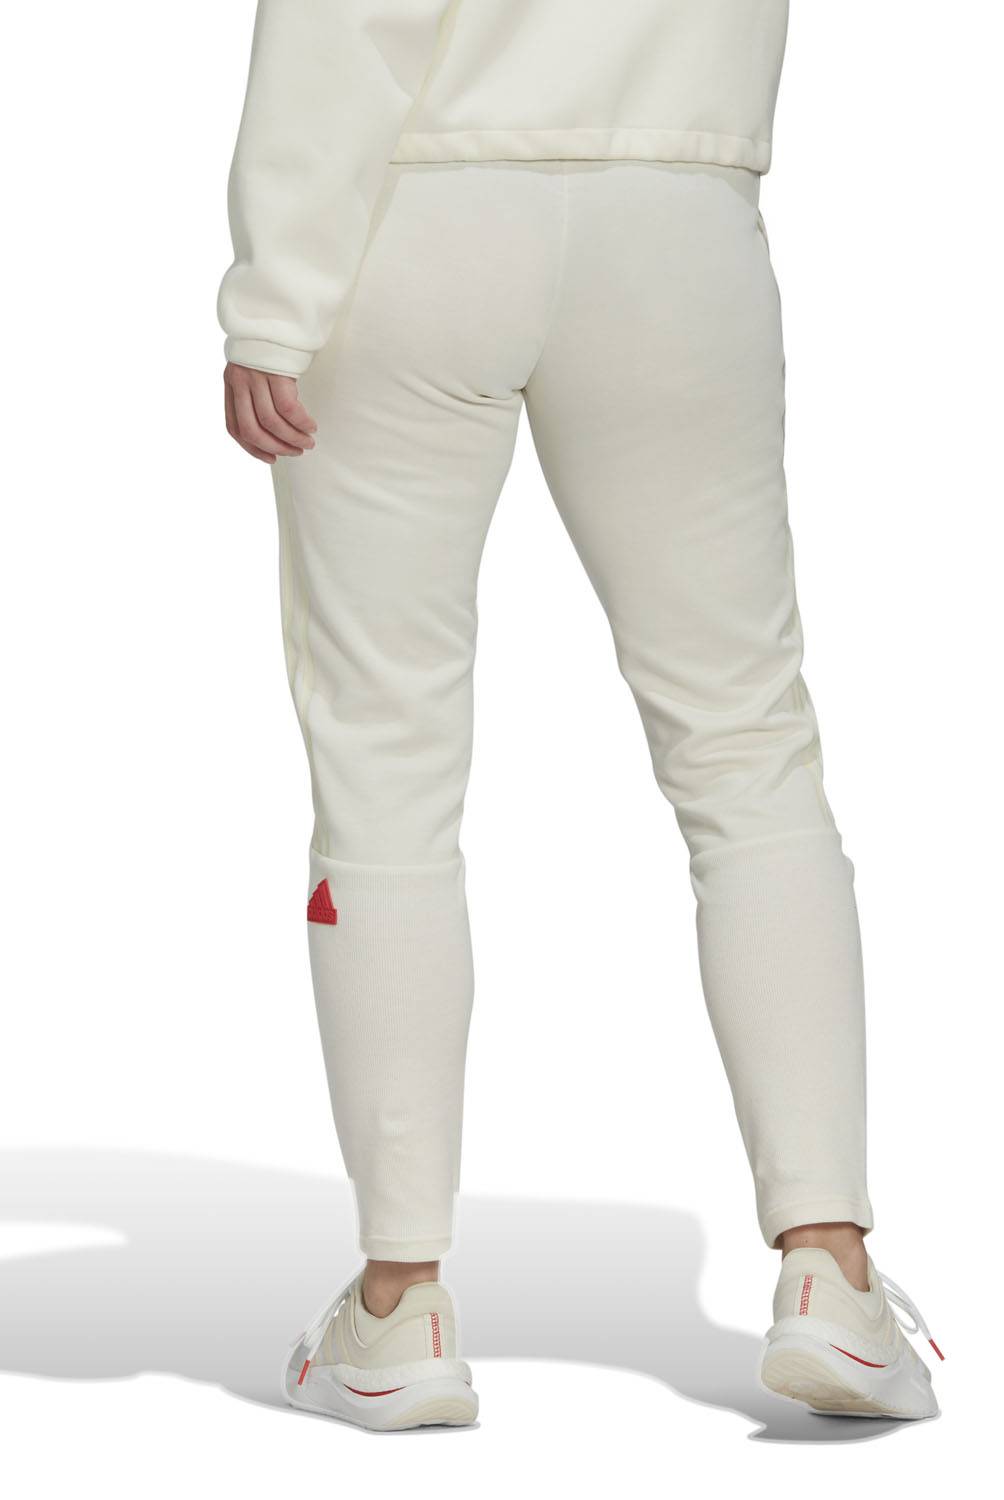 ADIDAS - Adidas Pantalon de Buzo Deportivo Mujer